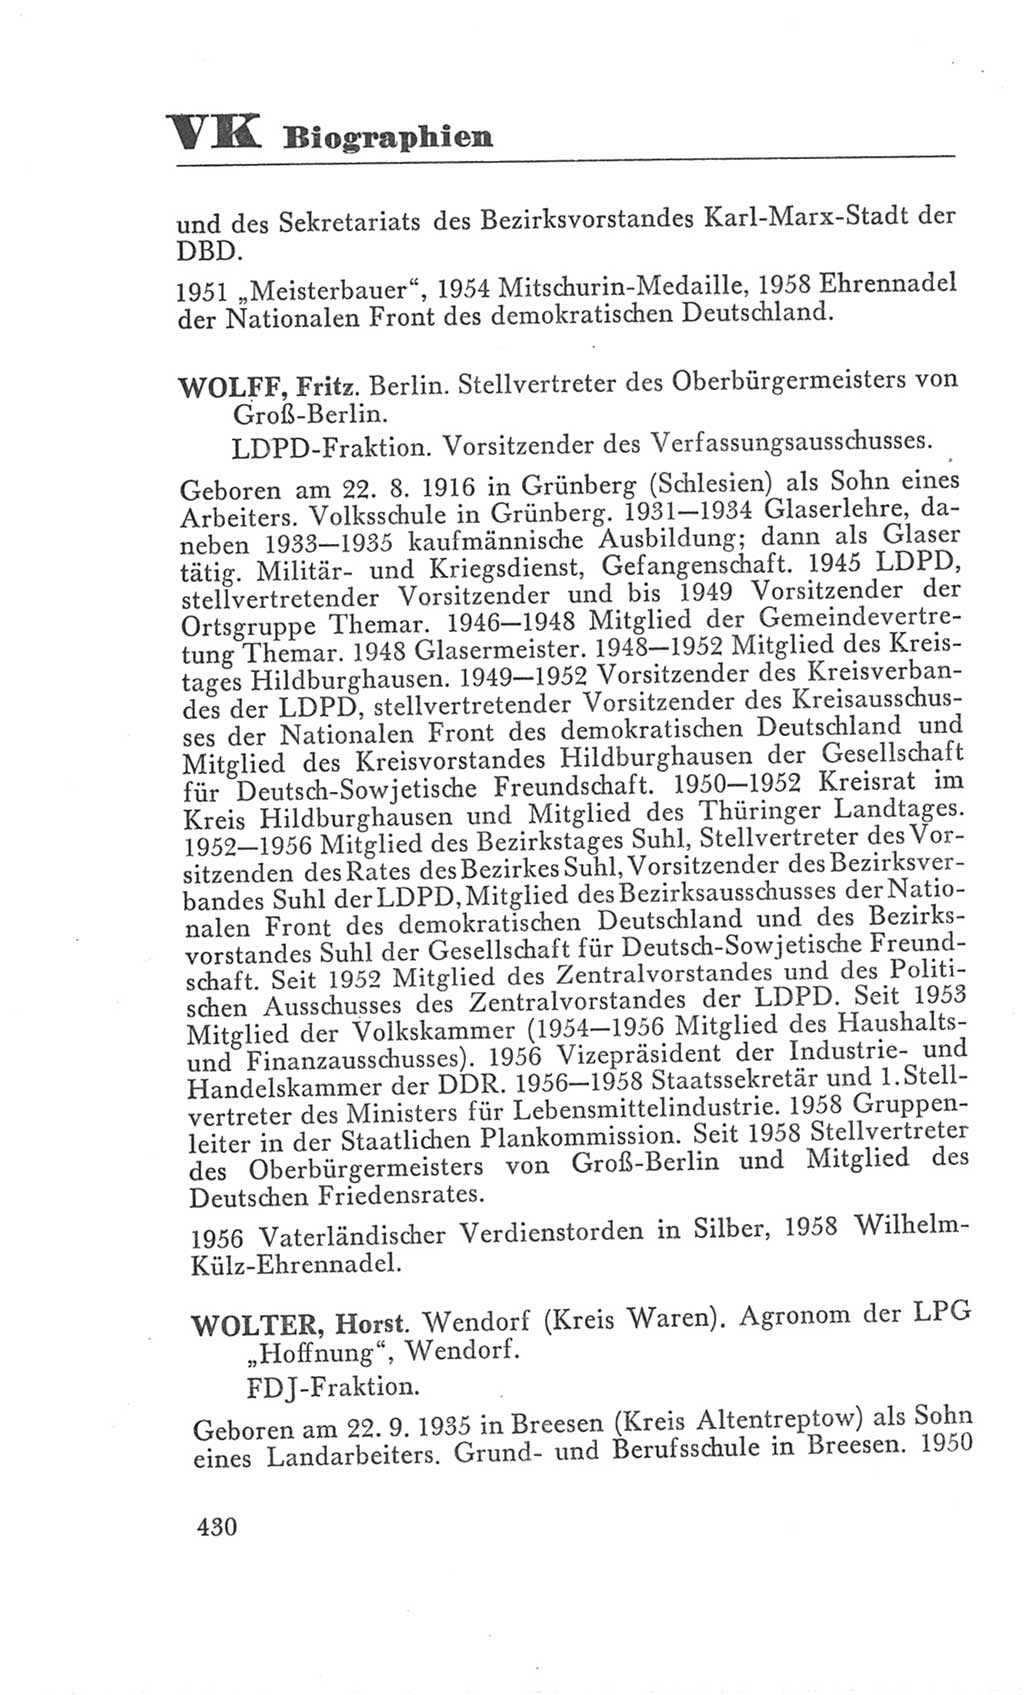 Handbuch der Volkskammer (VK) der Deutschen Demokratischen Republik (DDR), 3. Wahlperiode 1958-1963, Seite 430 (Hdb. VK. DDR 3. WP. 1958-1963, S. 430)